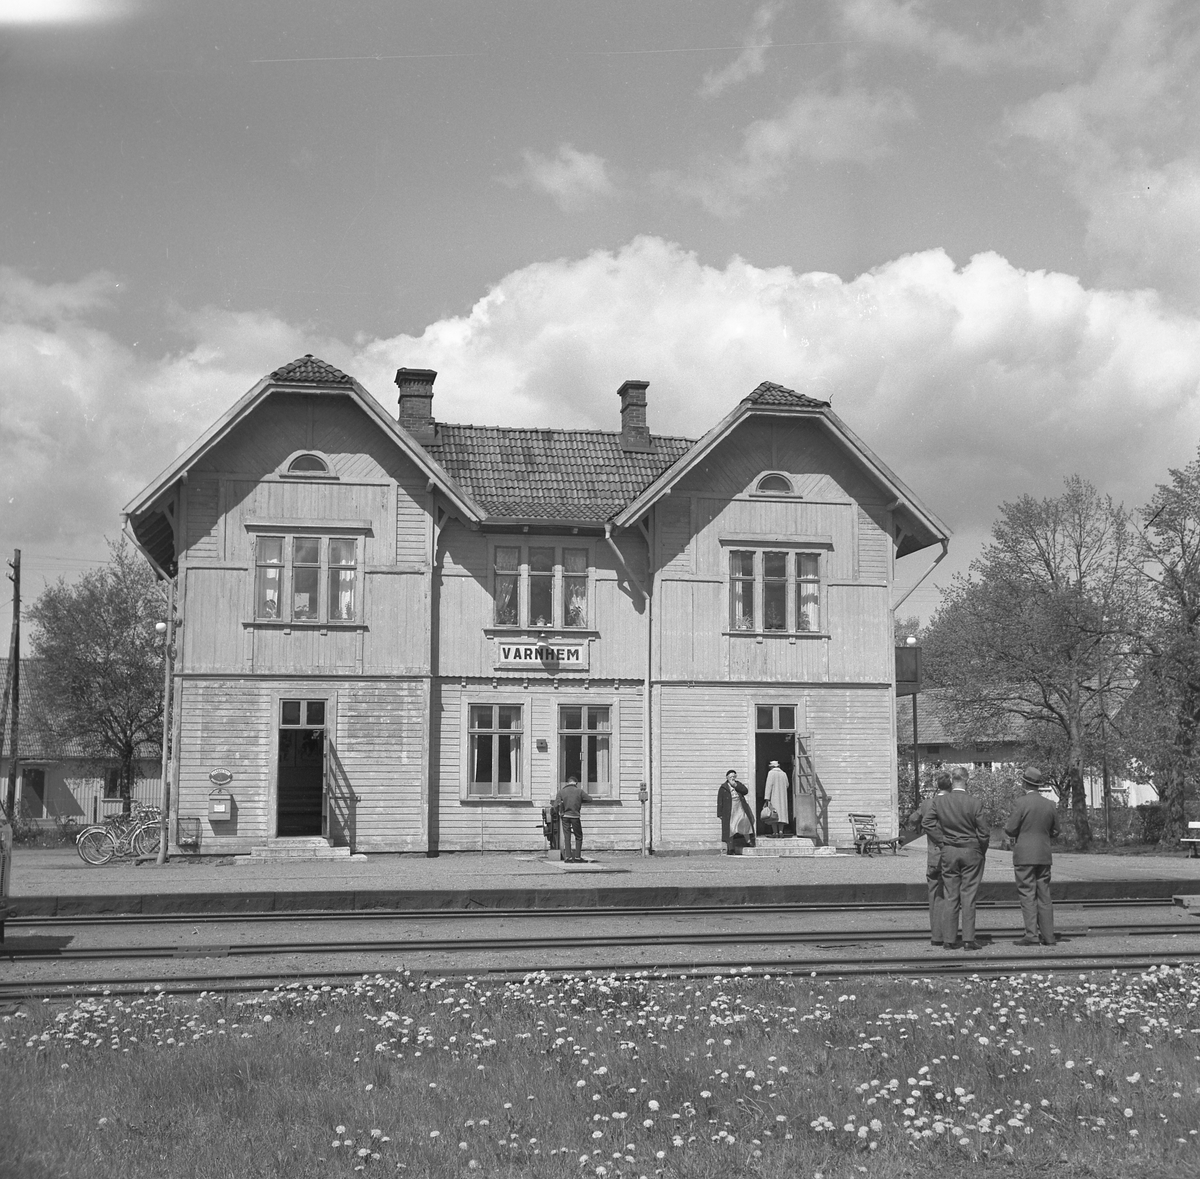 Varnhem station